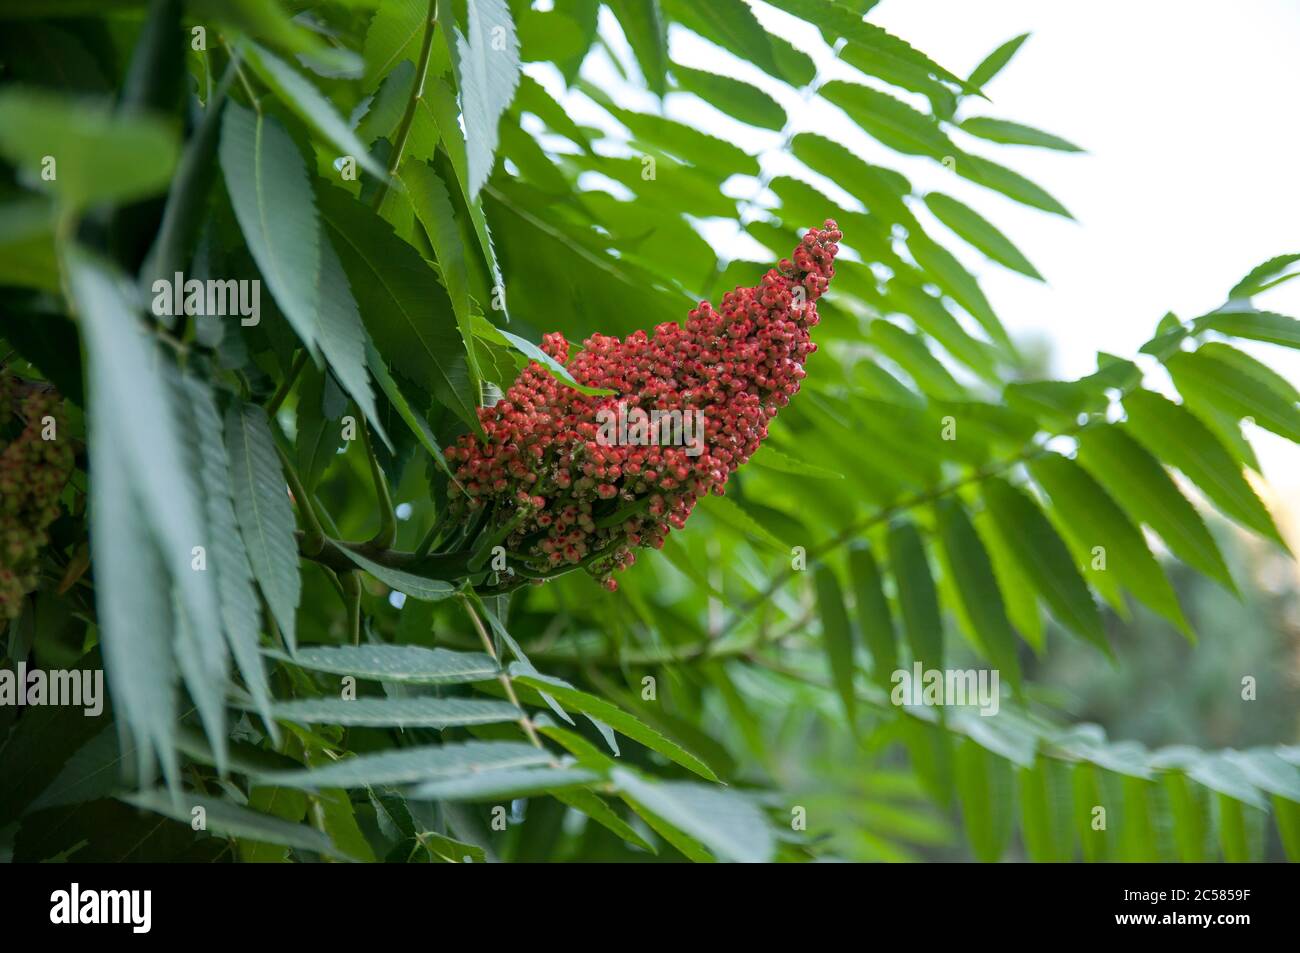 Staghorn sumac, Zierpflanze sumac Hirschhorn - Essigbaum. Blüte des dekorativen Sumac-Baumes. Kegelförmige Rispen von rot-braunen Blüten Stockfoto